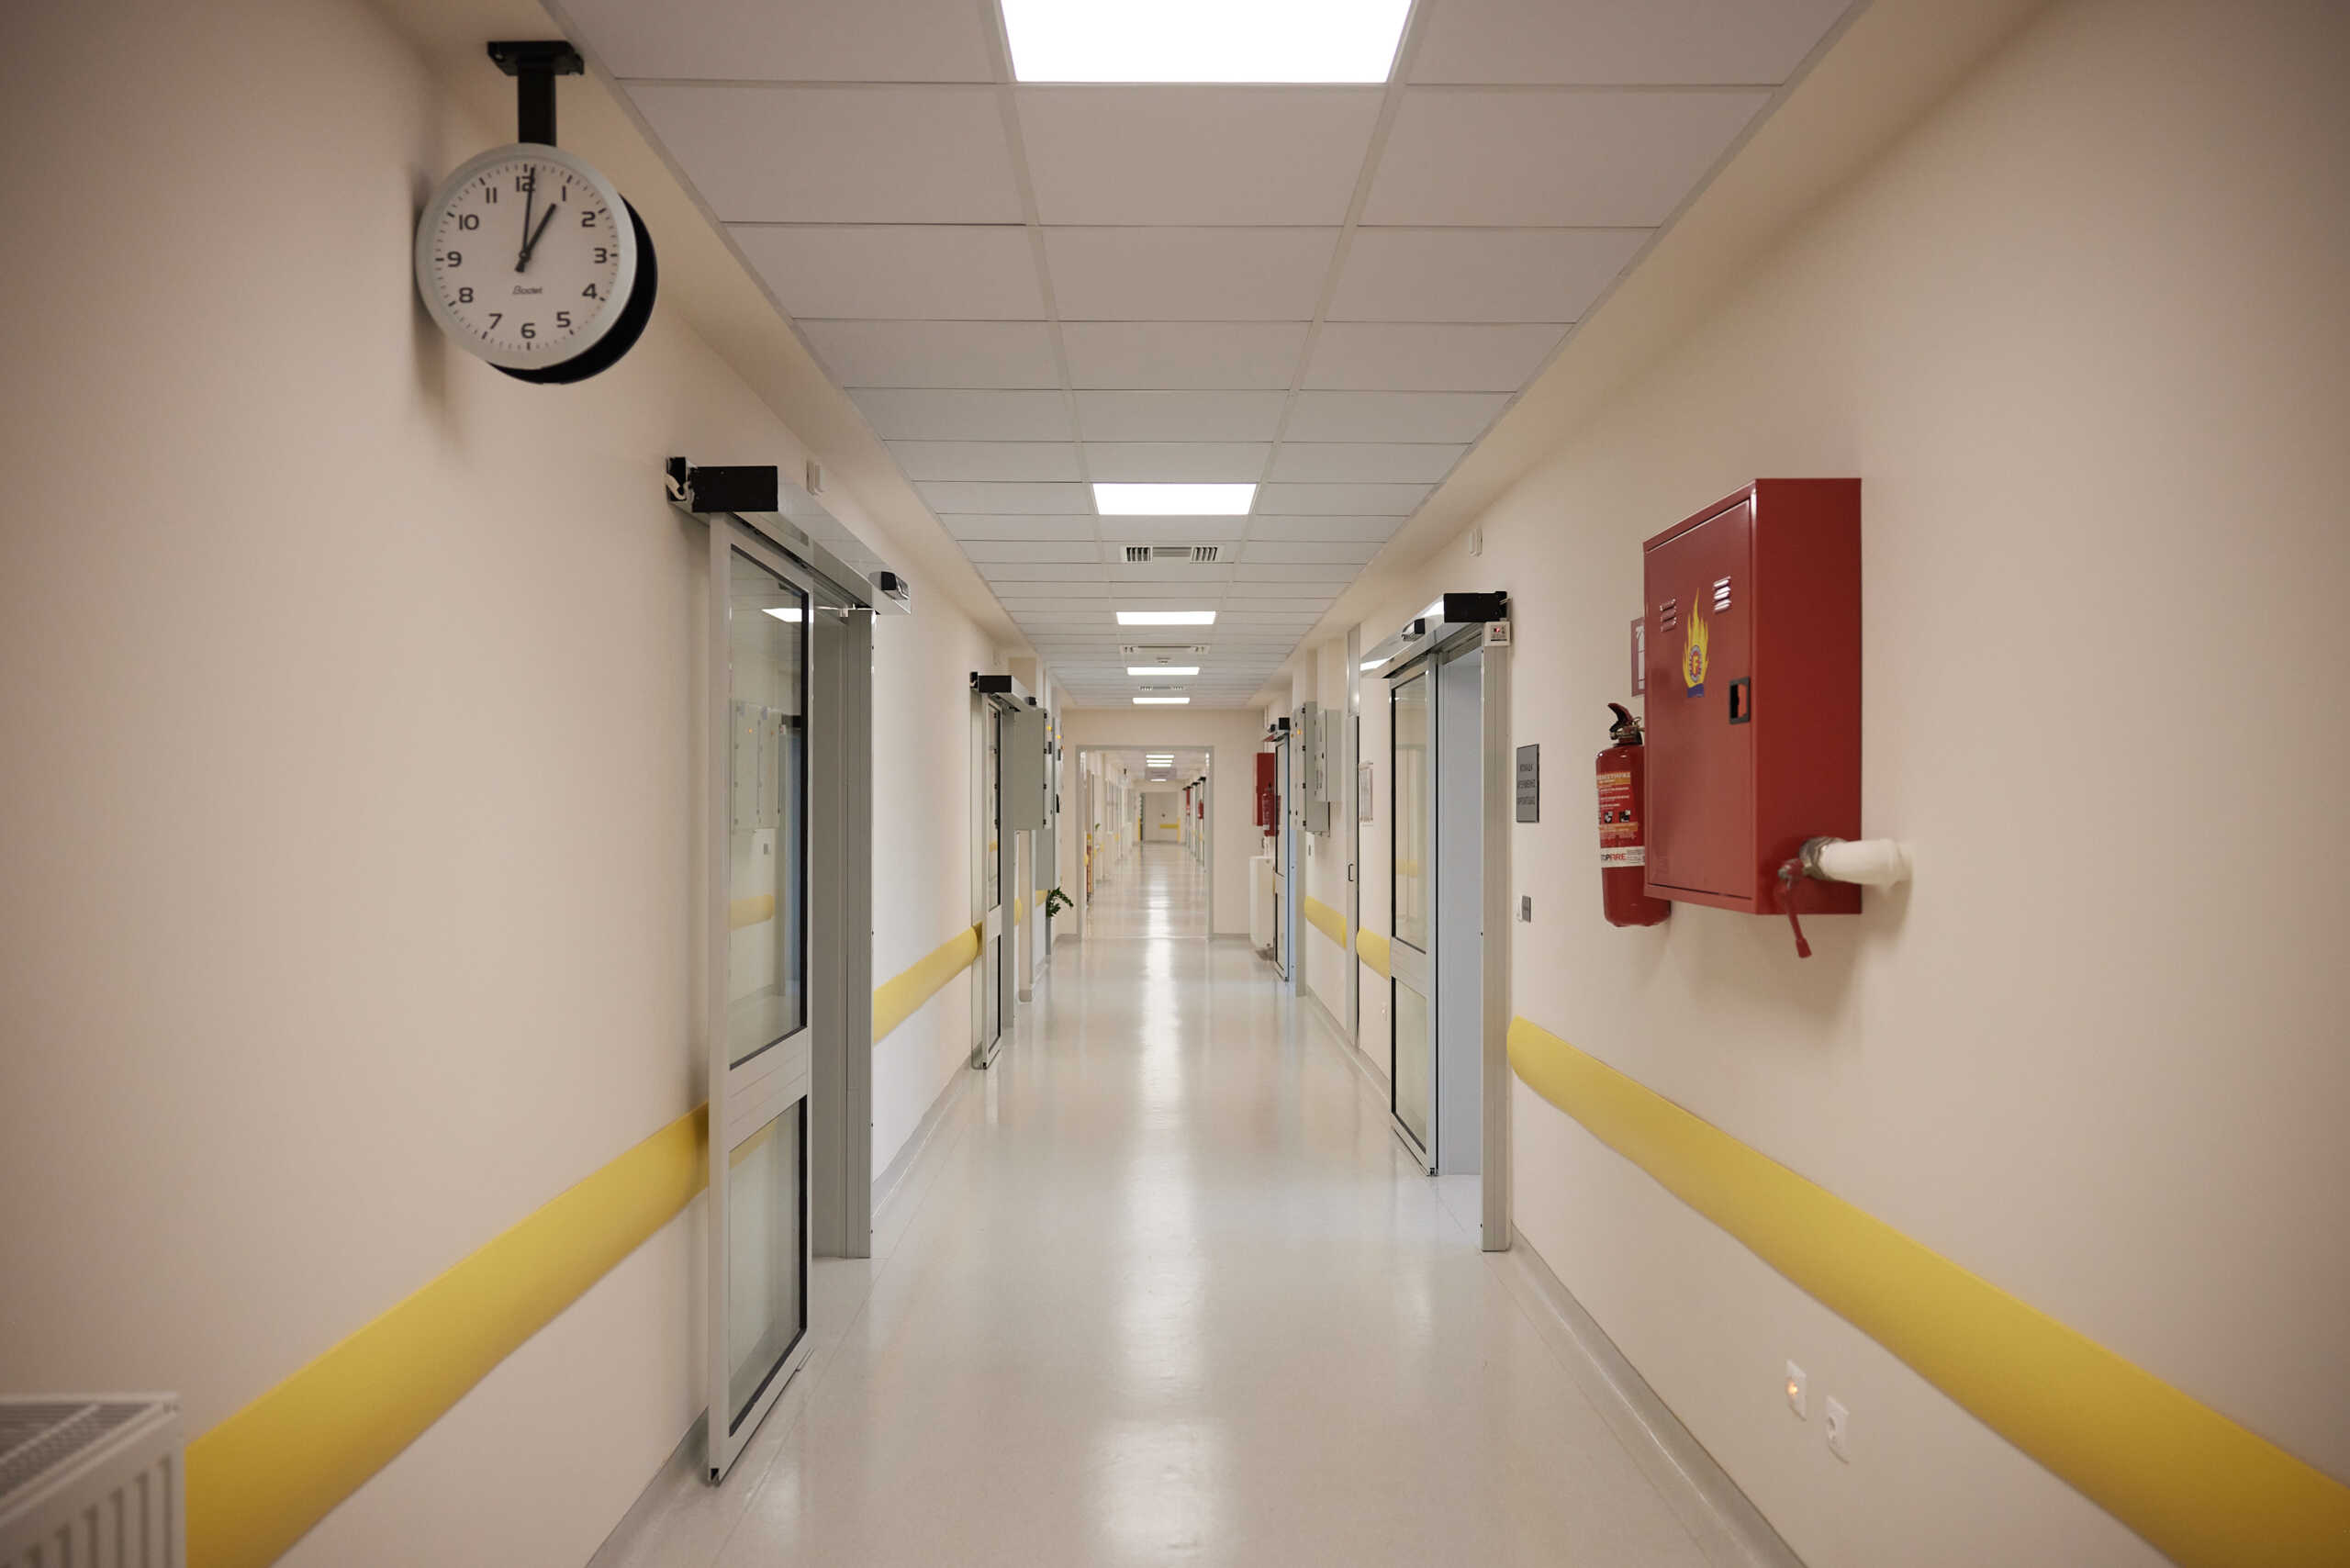 Υπουργείο Υγείας: Προκήρυξη για 246 θέσεις ειδικευομένων γιατρών του ΕΣΥ – Όλη η διαδικασία